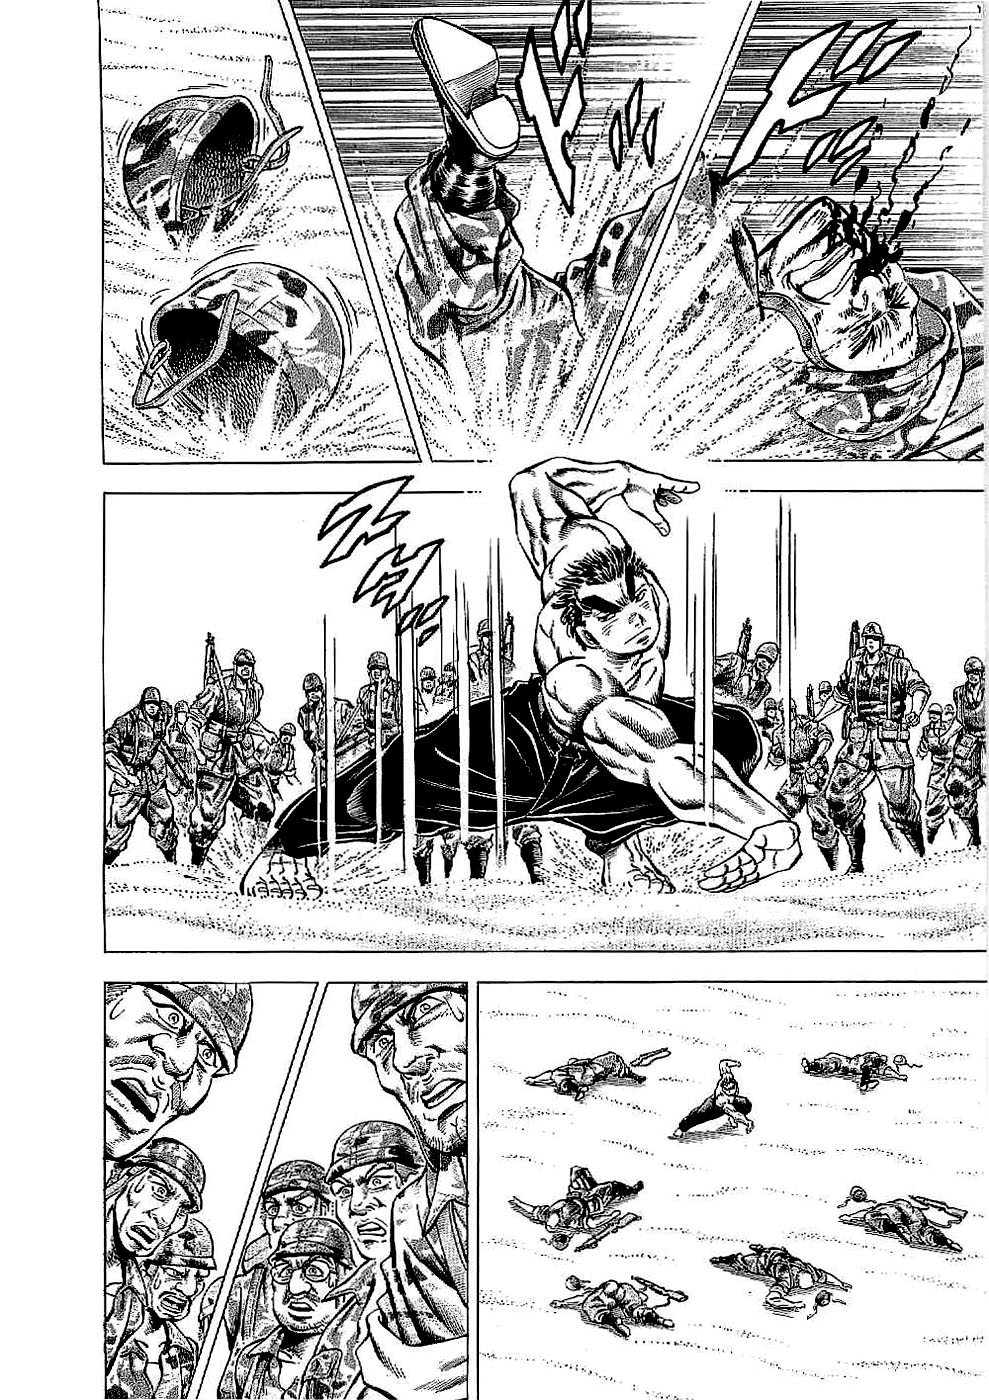 Tenkamusou Edajima Heihachi Den Vol.3 Ch.14